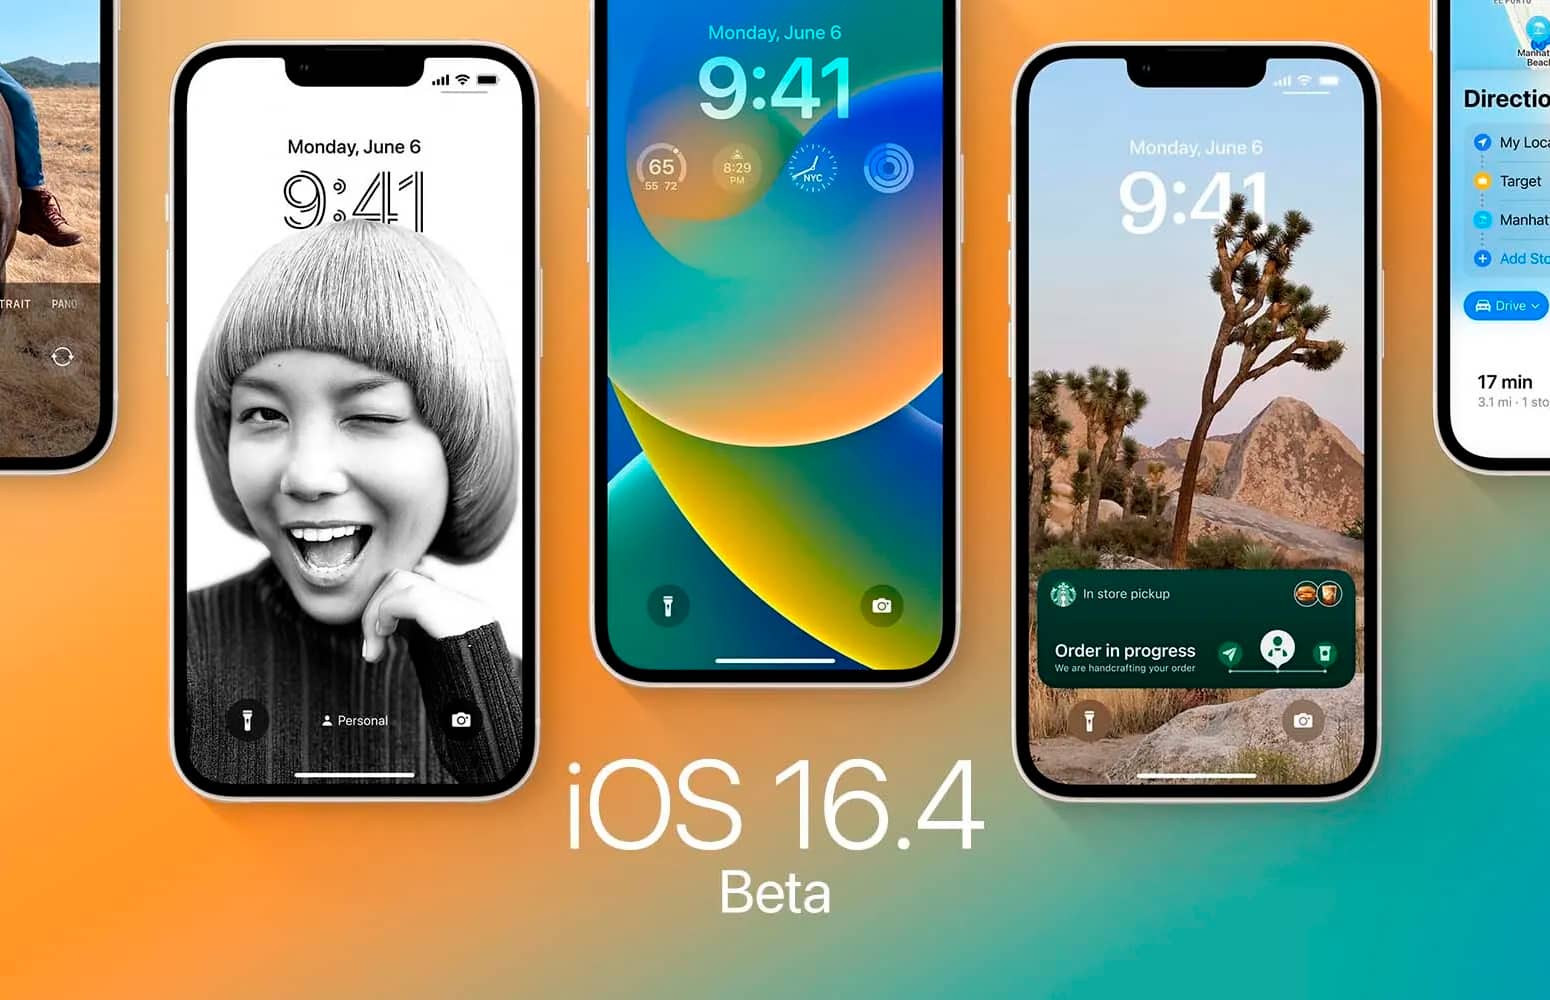 Apple випустила iOS 16.4 1. Що нового?